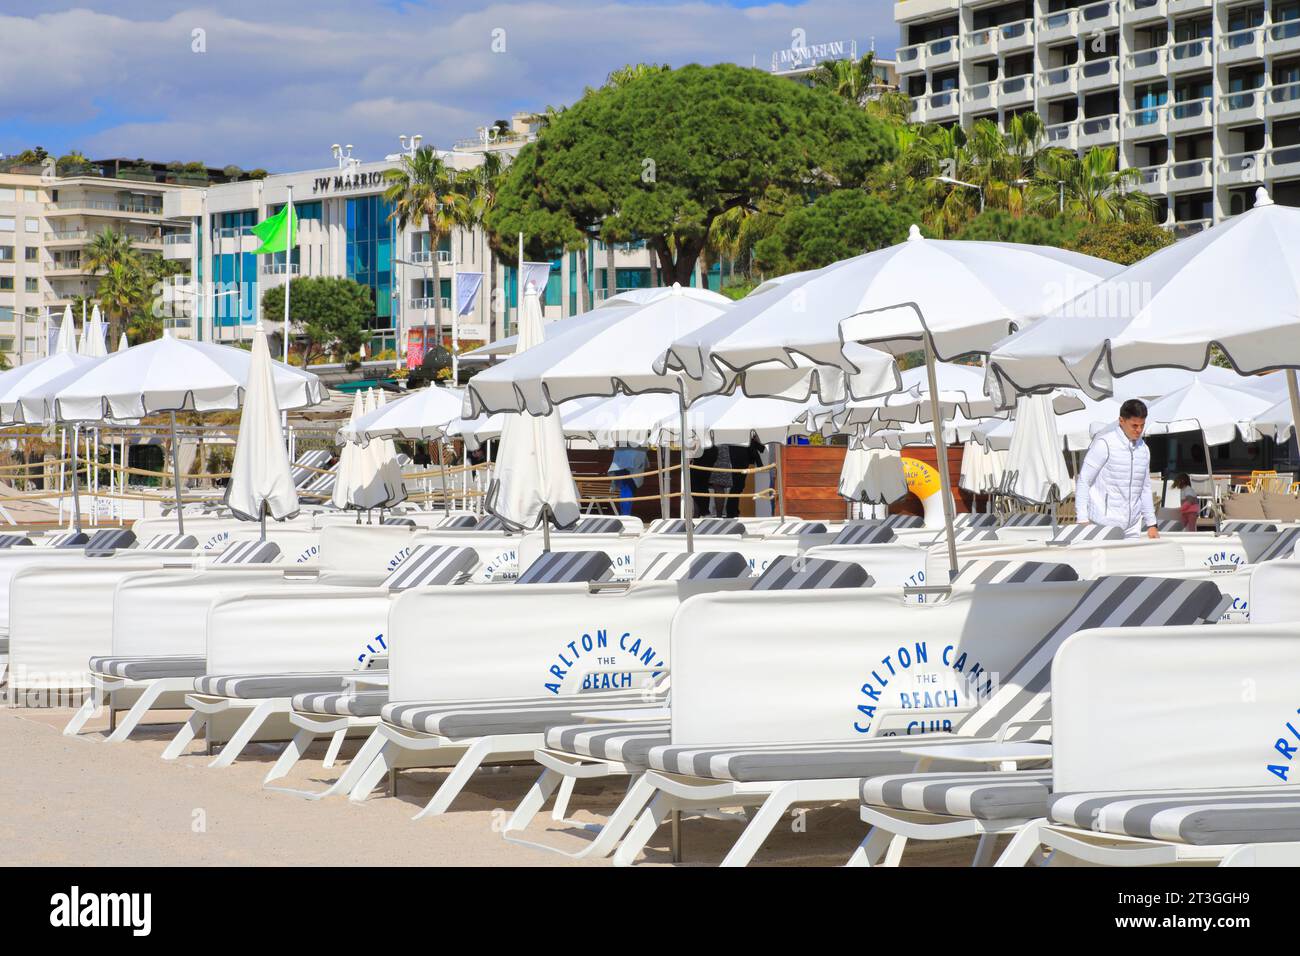 Francia, Alpi marittime, Cannes, Croisette, Hotel Carlton (monumento storico costruito nel 1913 e classificato come patrimonio del XX secolo), il Beach Club con la sua spiaggia privata Foto Stock